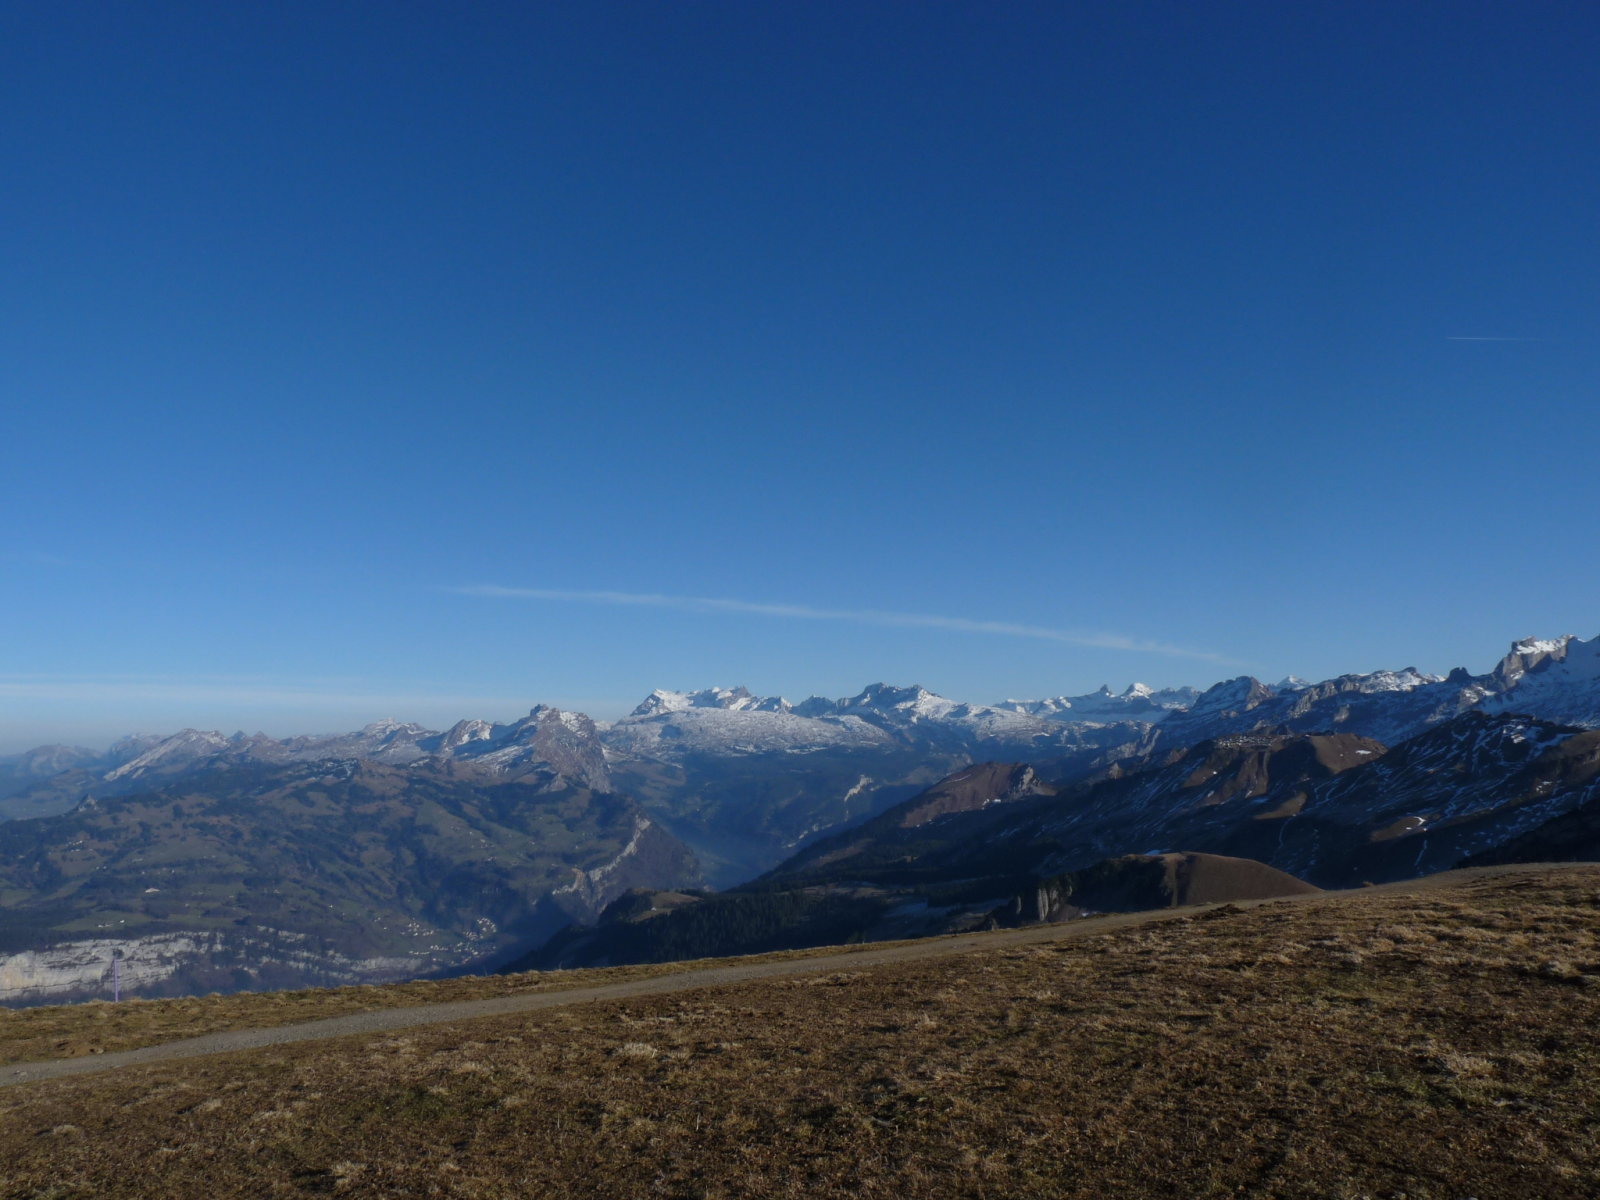 kelet felé a Glarner Alpok látszodtak